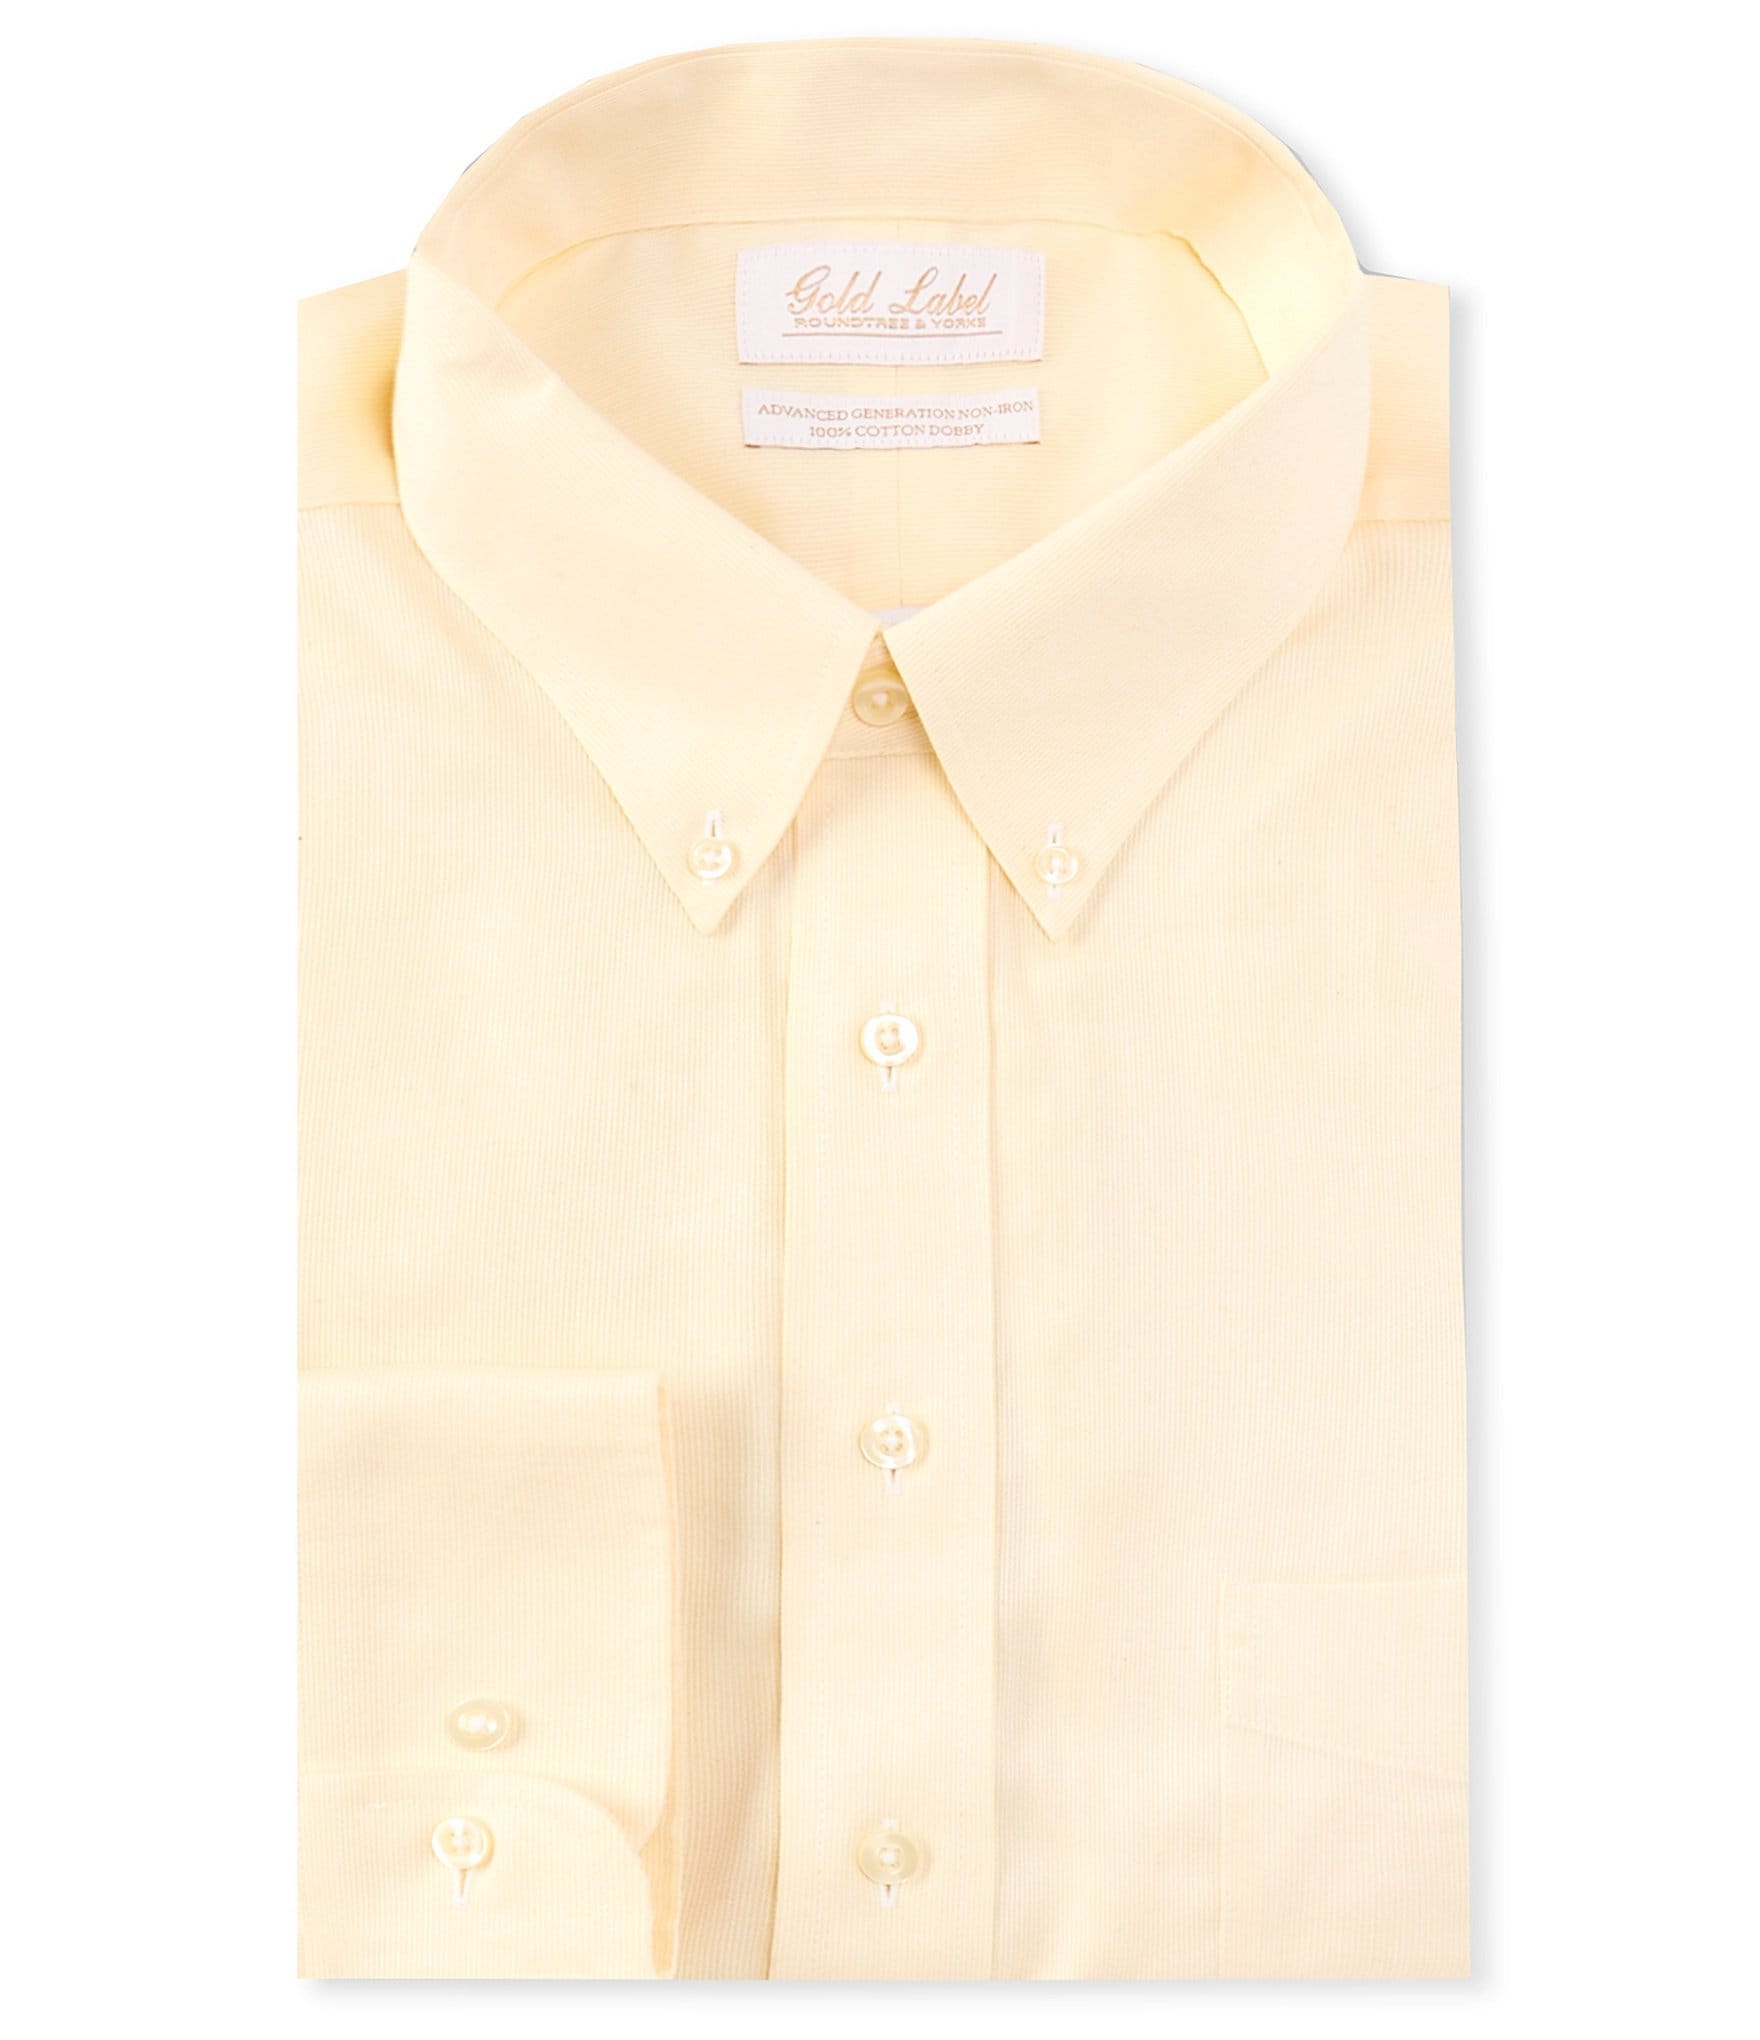 Roundtree & Yorke Gold Label Dress Shirt Modal Blend Med Char Color, M